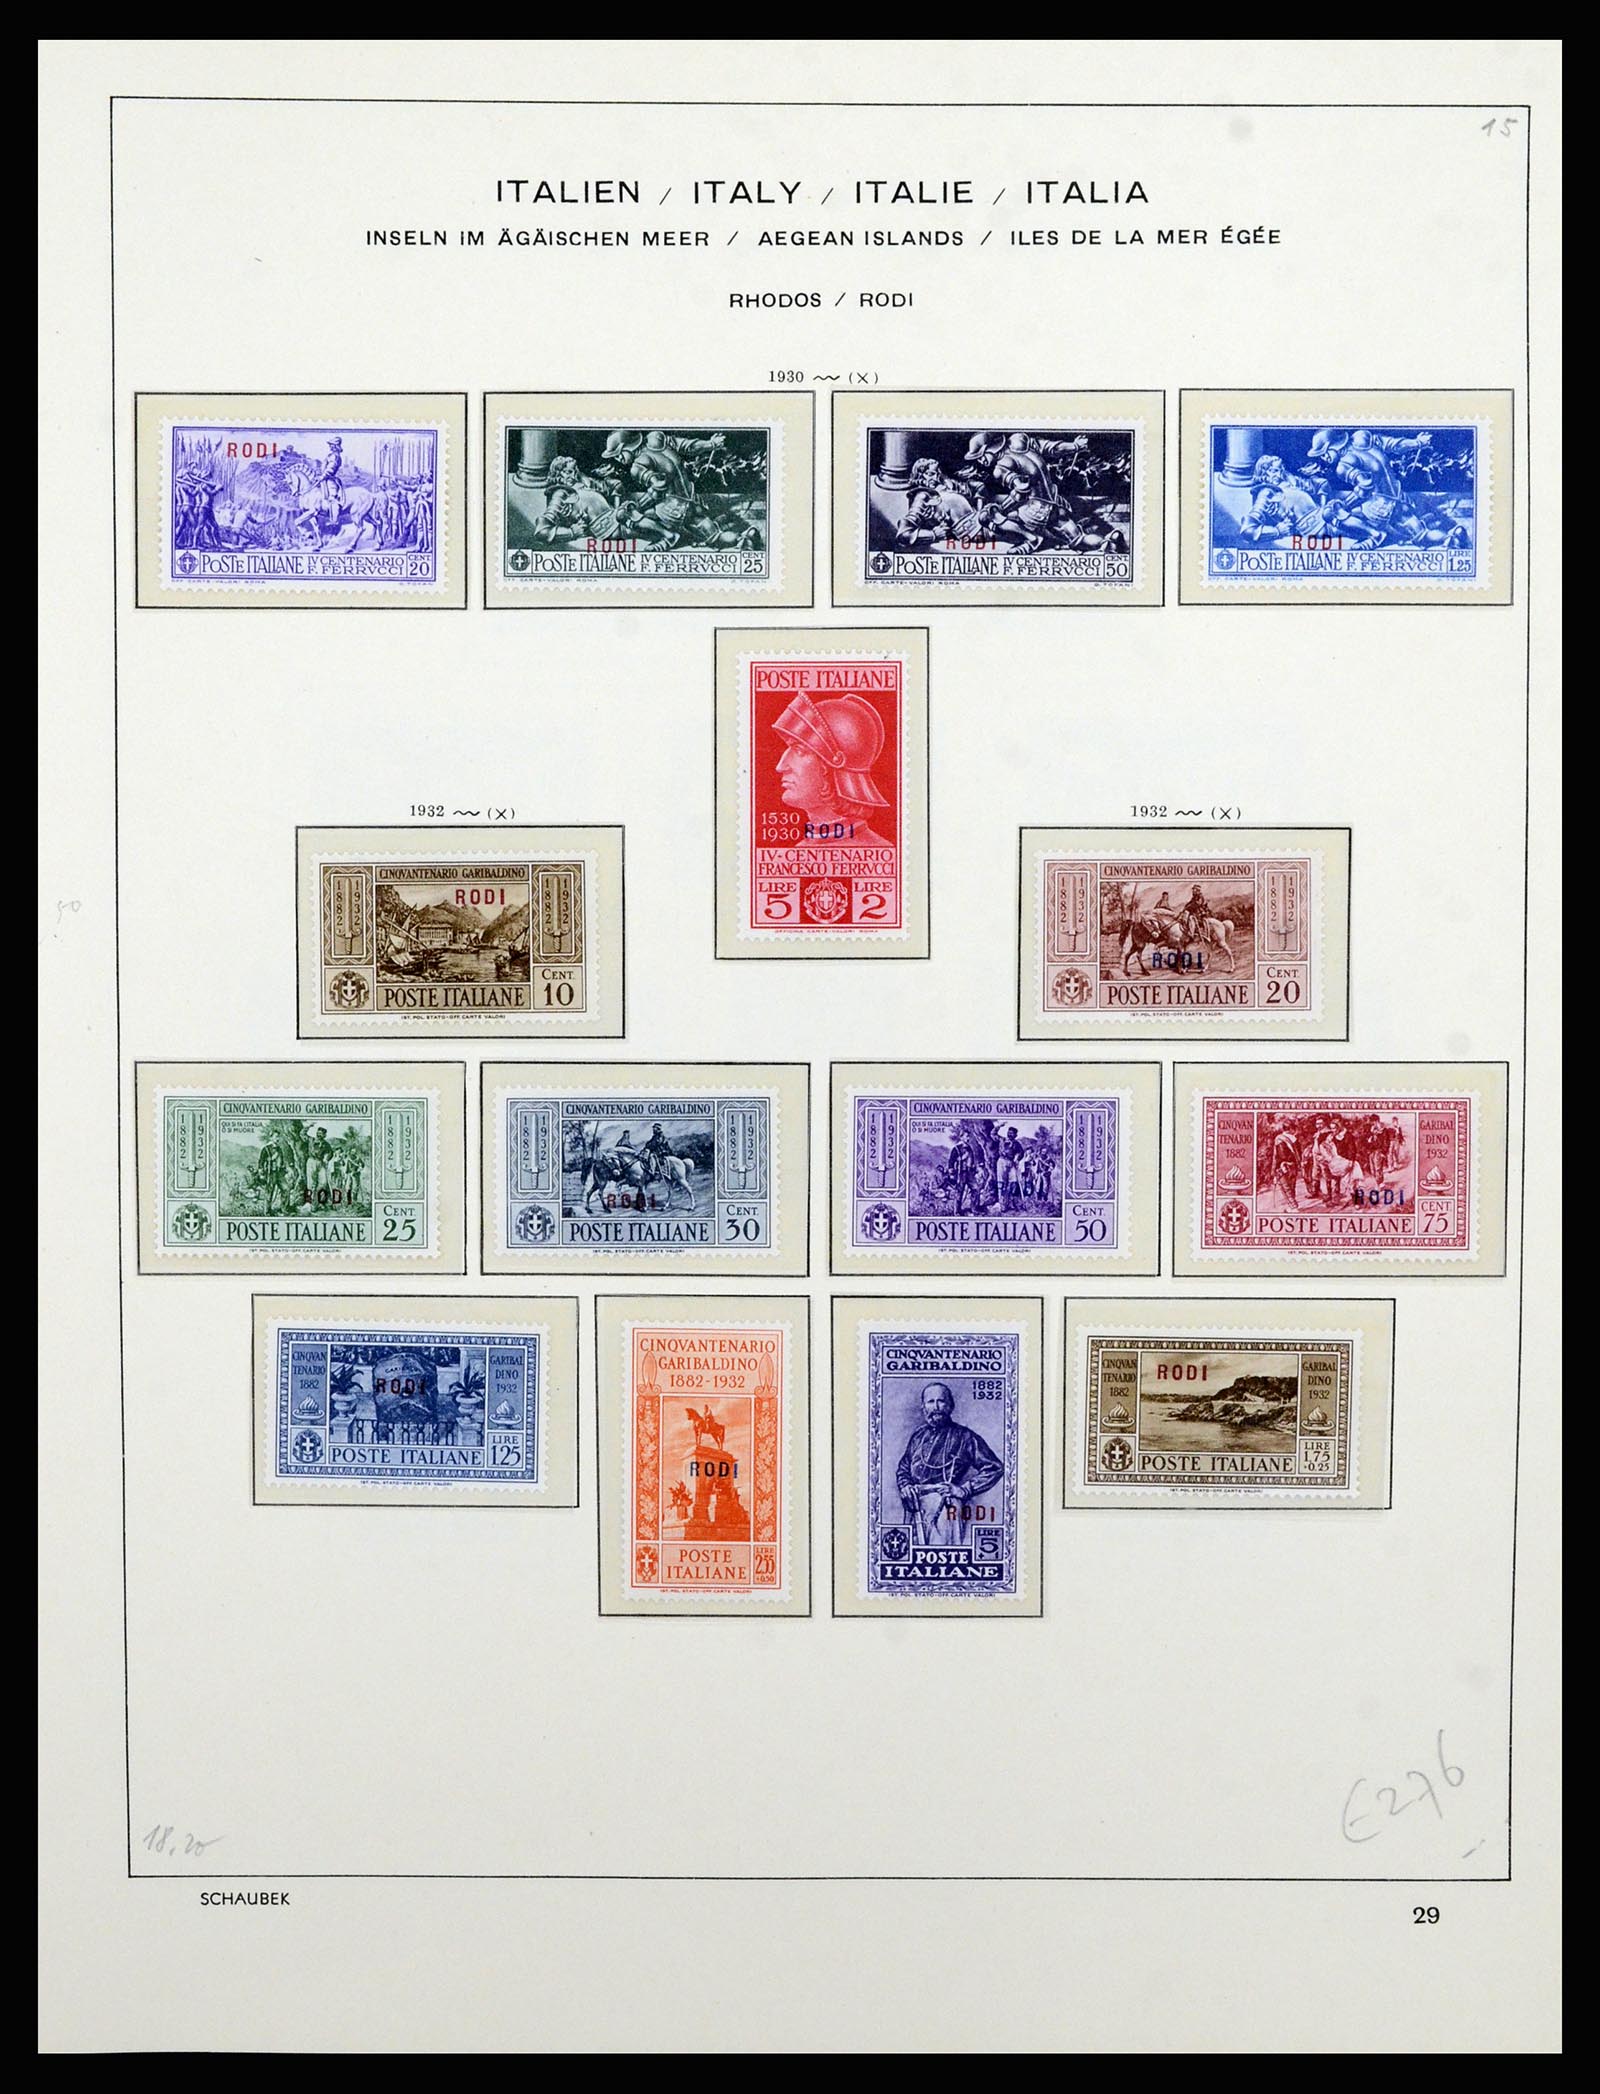 36577 056 - Stamp collection 36577 Italiaanse gebieden 1870-1940.